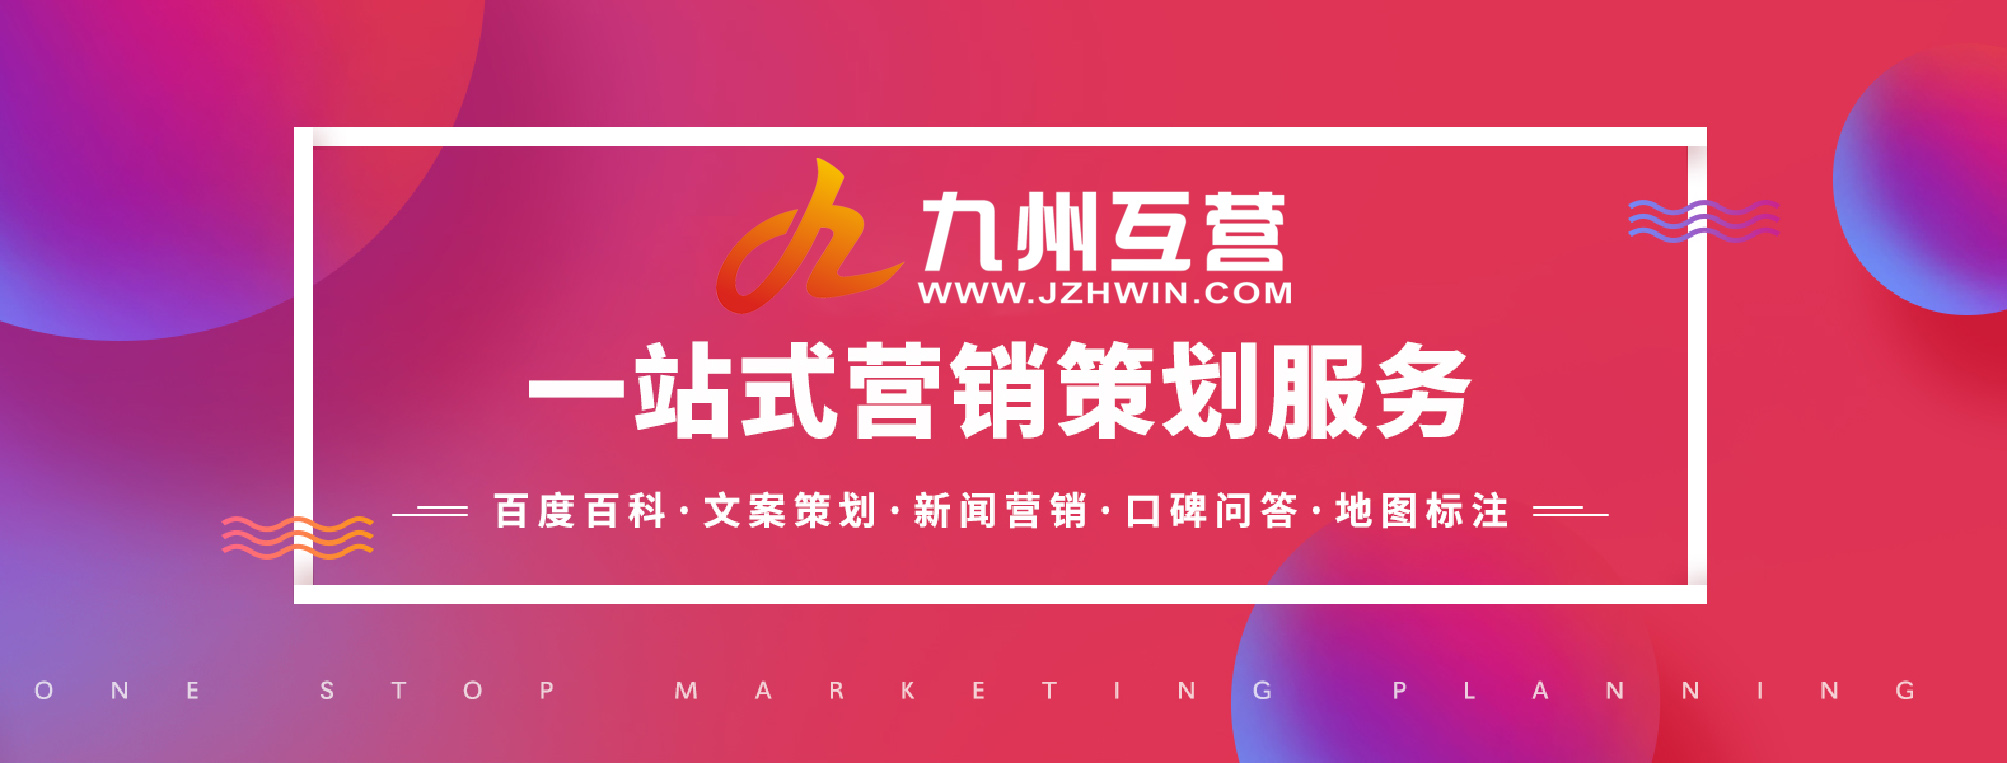 预算低怎么做品牌营销推广，深圳网络推广公司为你支招！